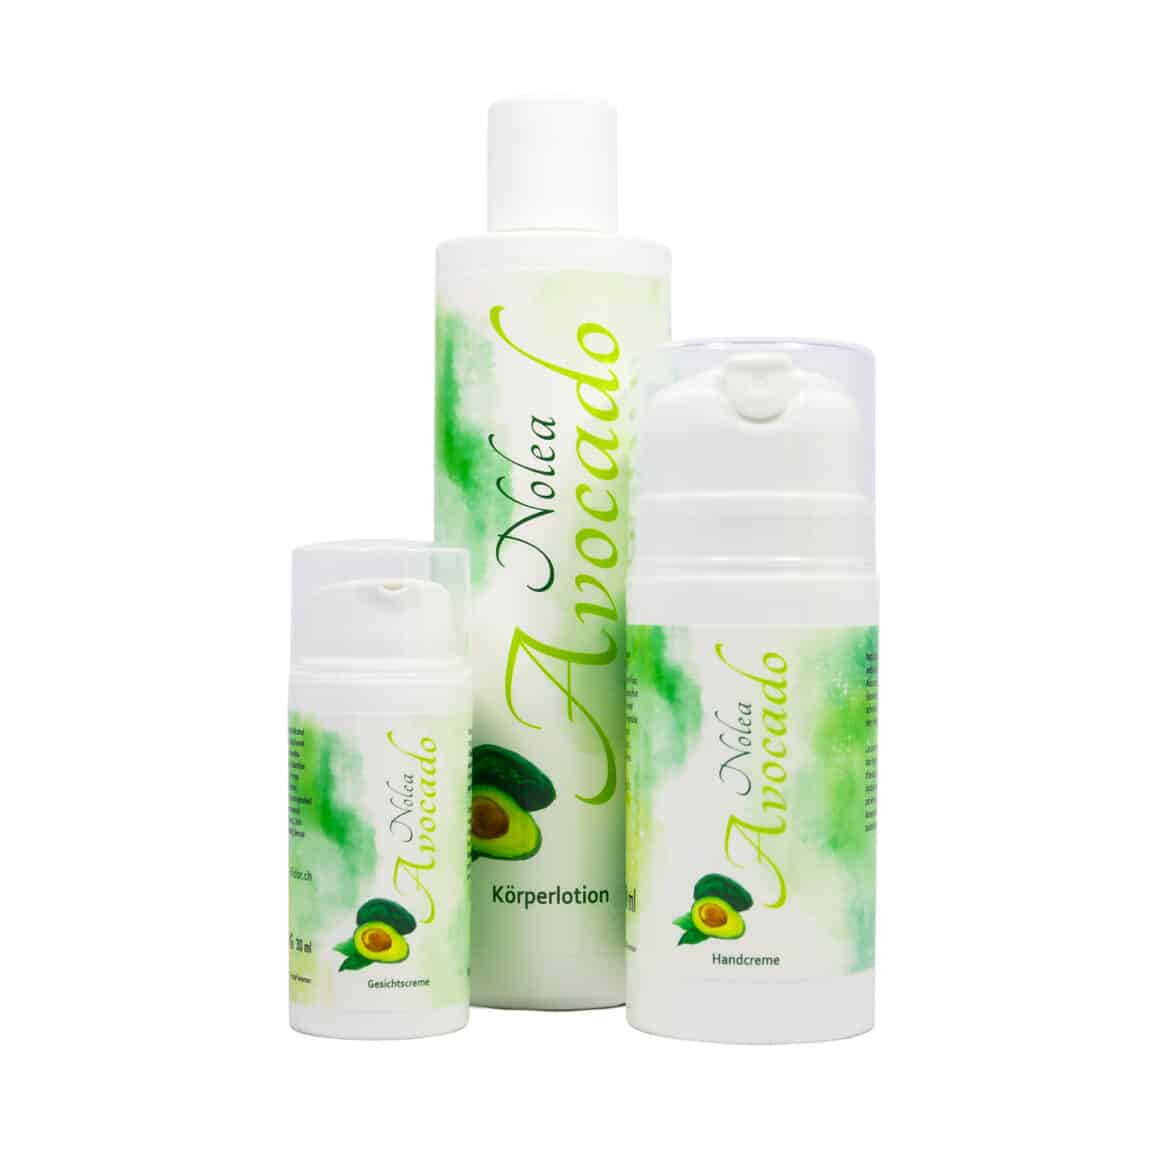 Ligne de produits NOLEA Avocado, crème pour le visage, crème pour les mains et lotion pour le corps. Cosmétique naturelle by Blidor AG.